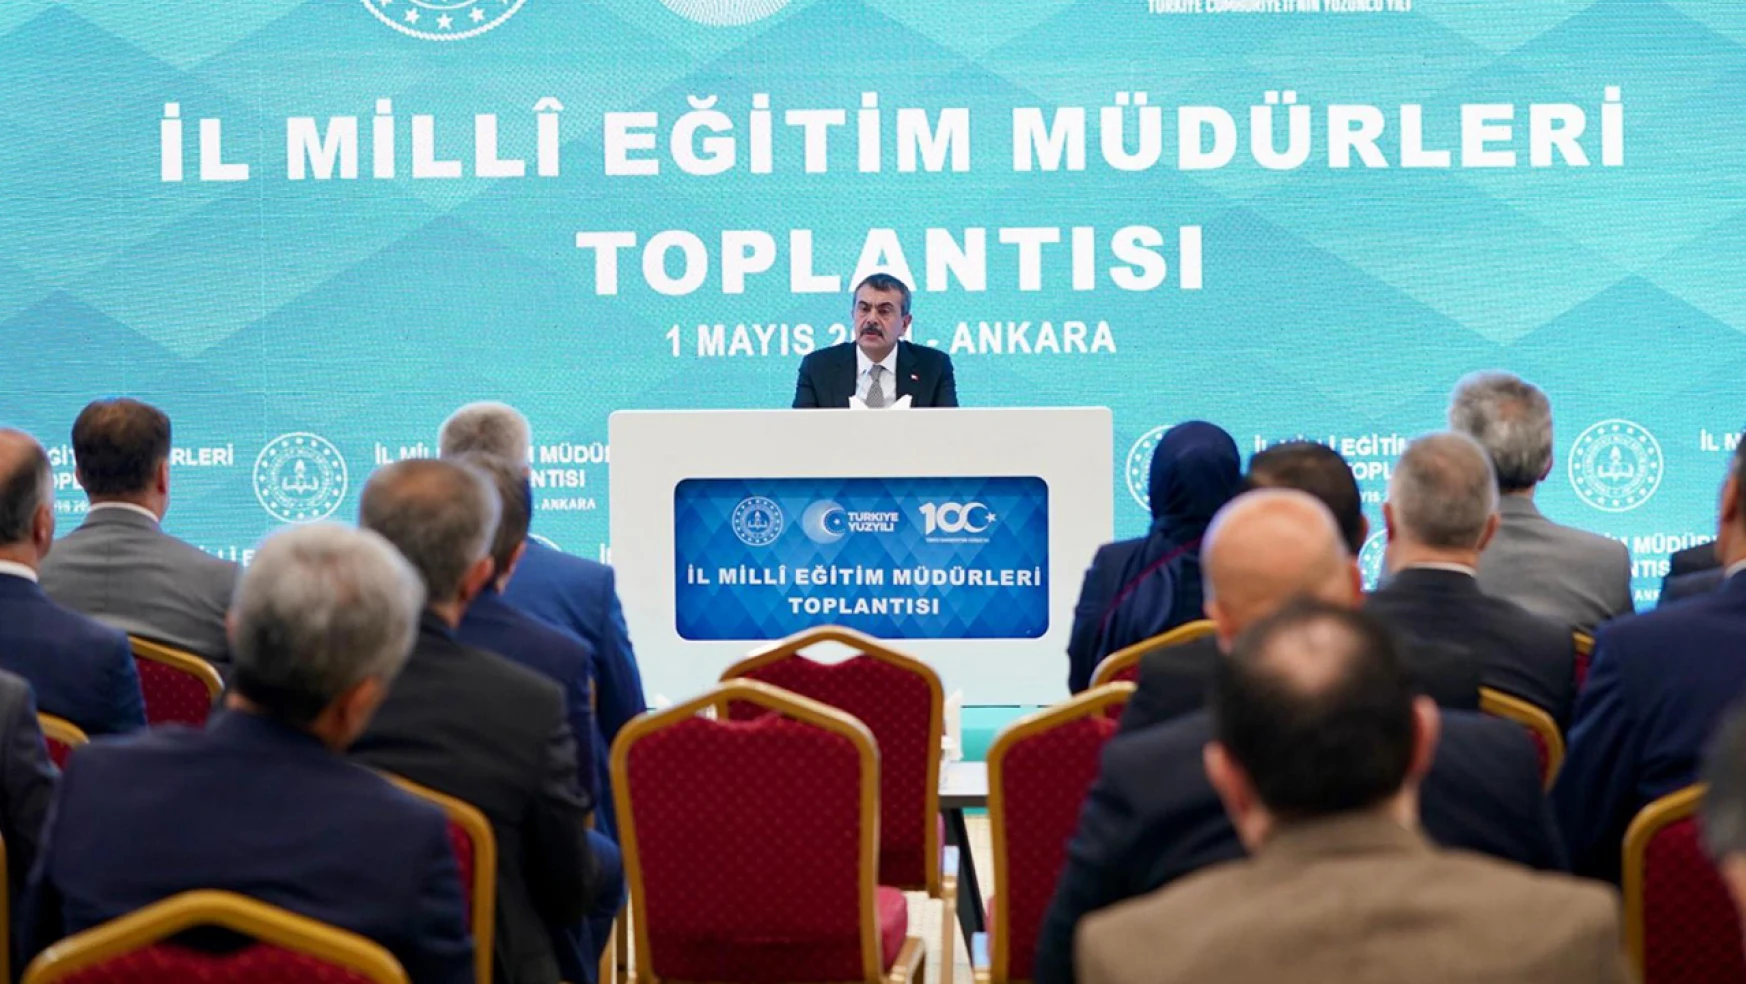 81 İlin Millî Eğitim Müdürü Ankara'ya çağrıldı